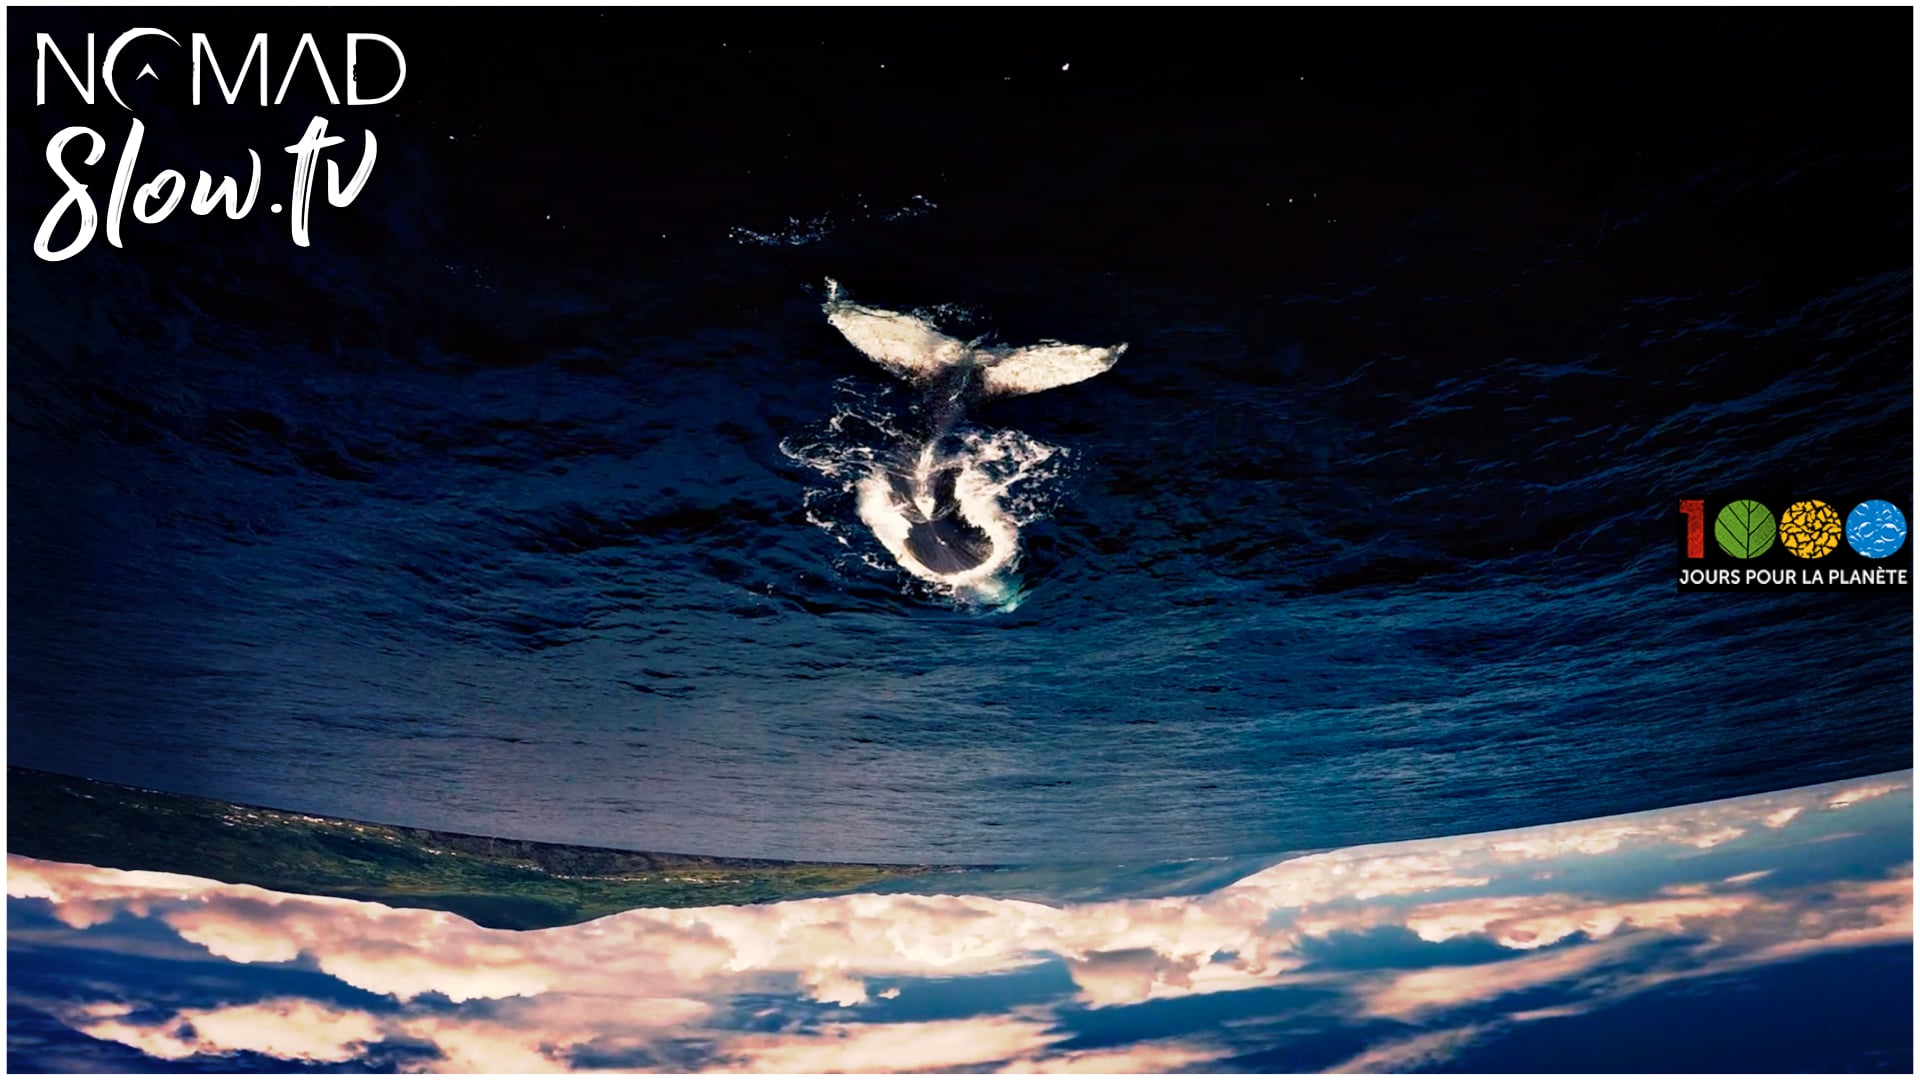 Humpback Whales Singing - 1000 jours pour la planete